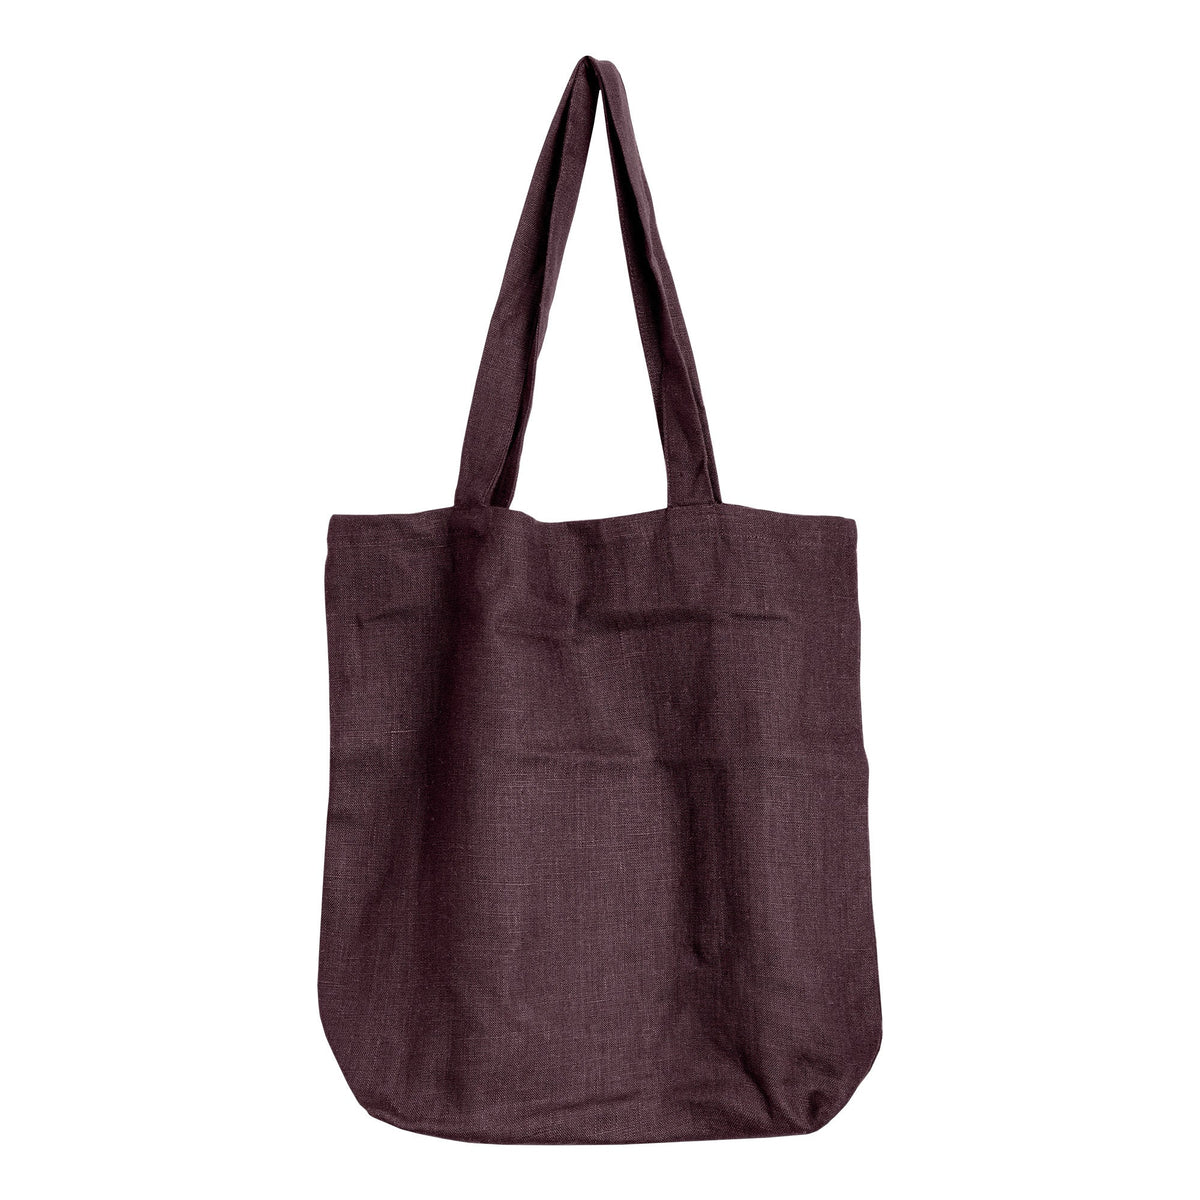 MENIQUE Reusable 100% Linen Tote Bag